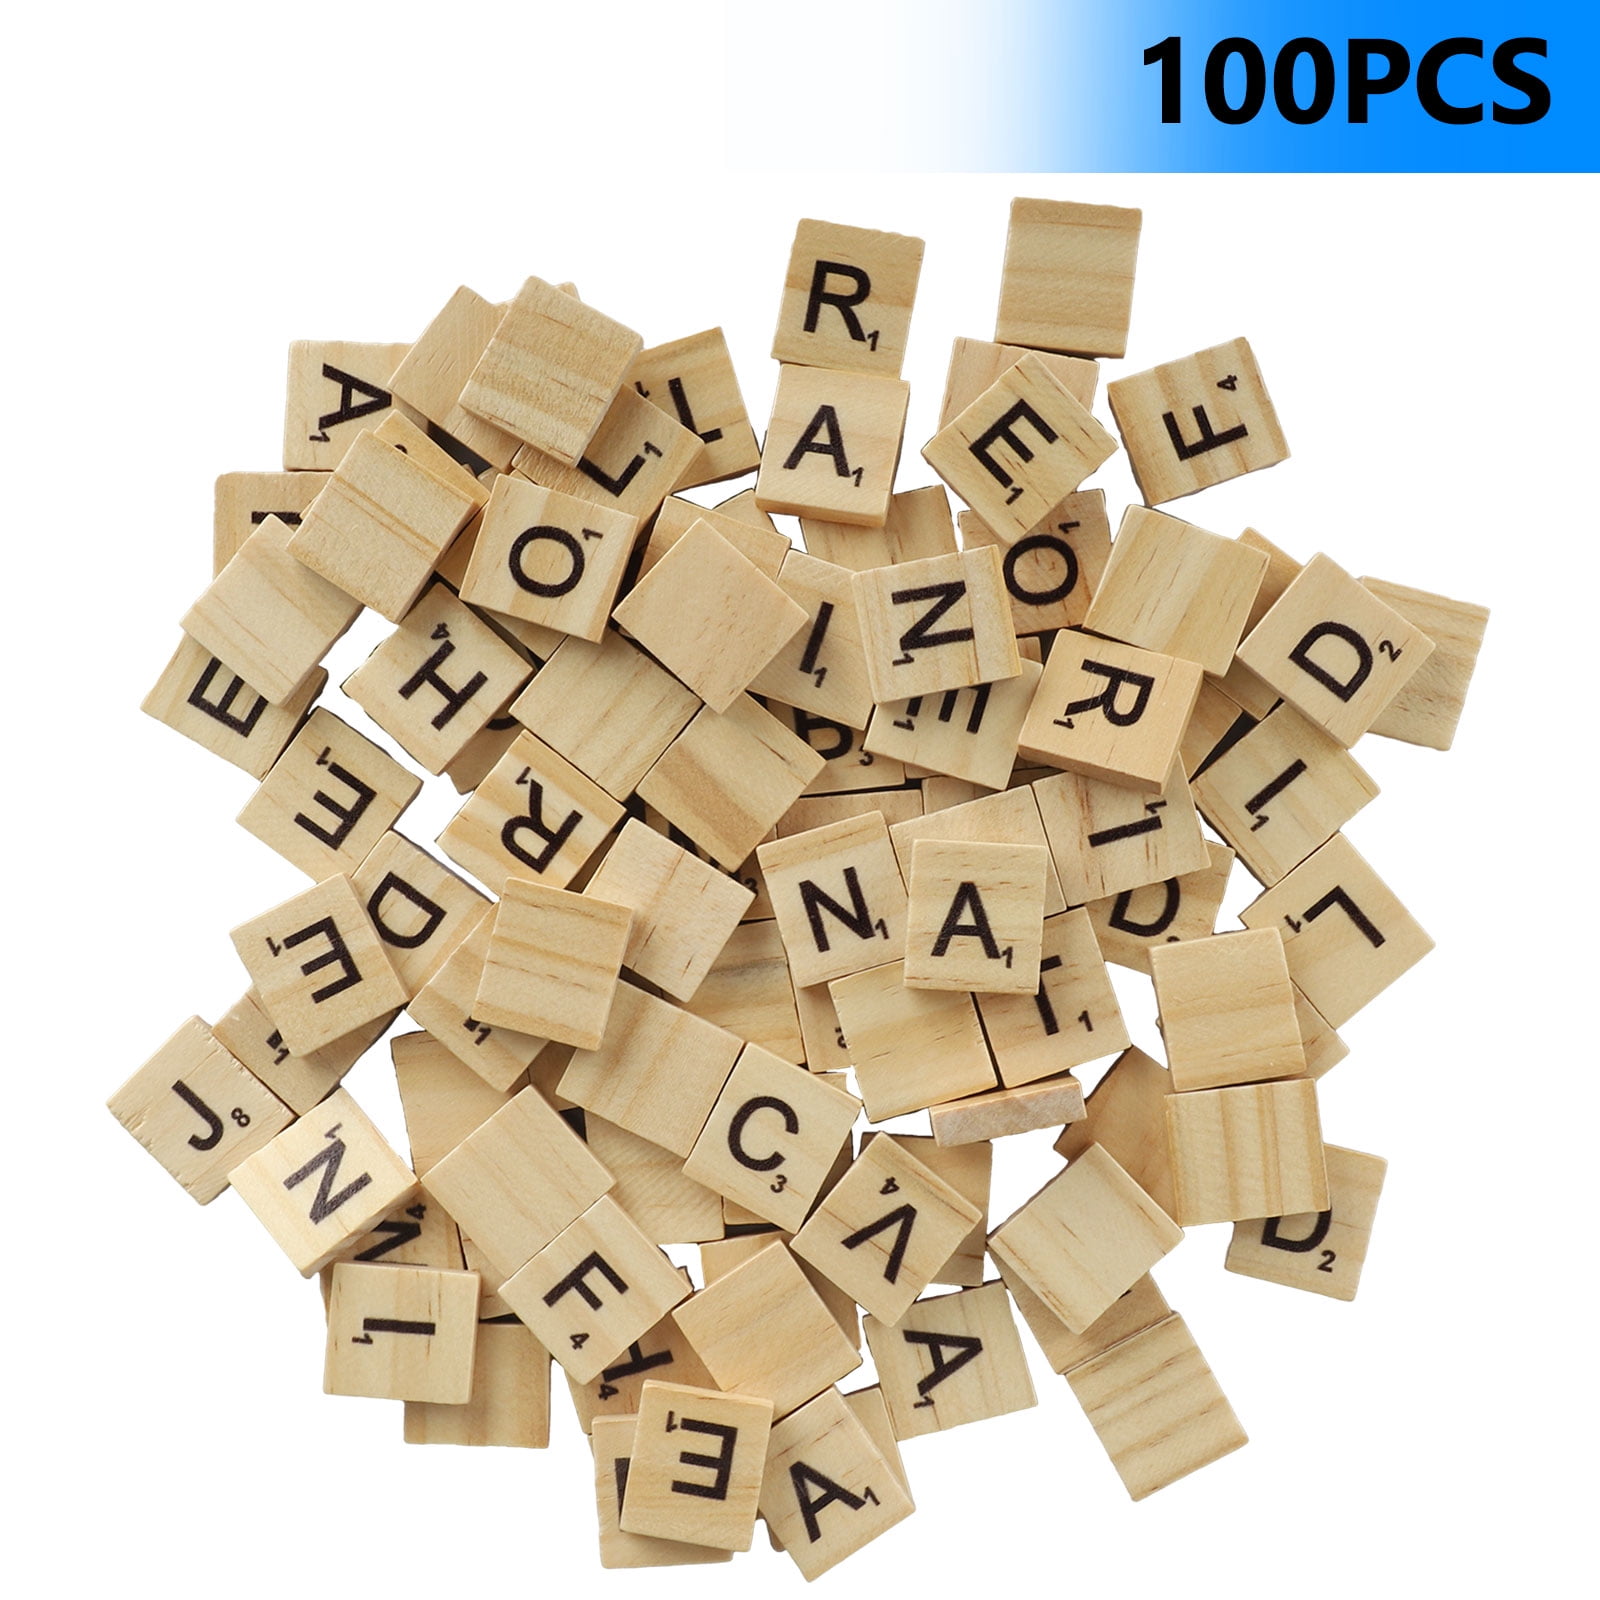 500 Pcs Wood Scrabble Tiles Scrabble Letters 5 Complete Sets of 